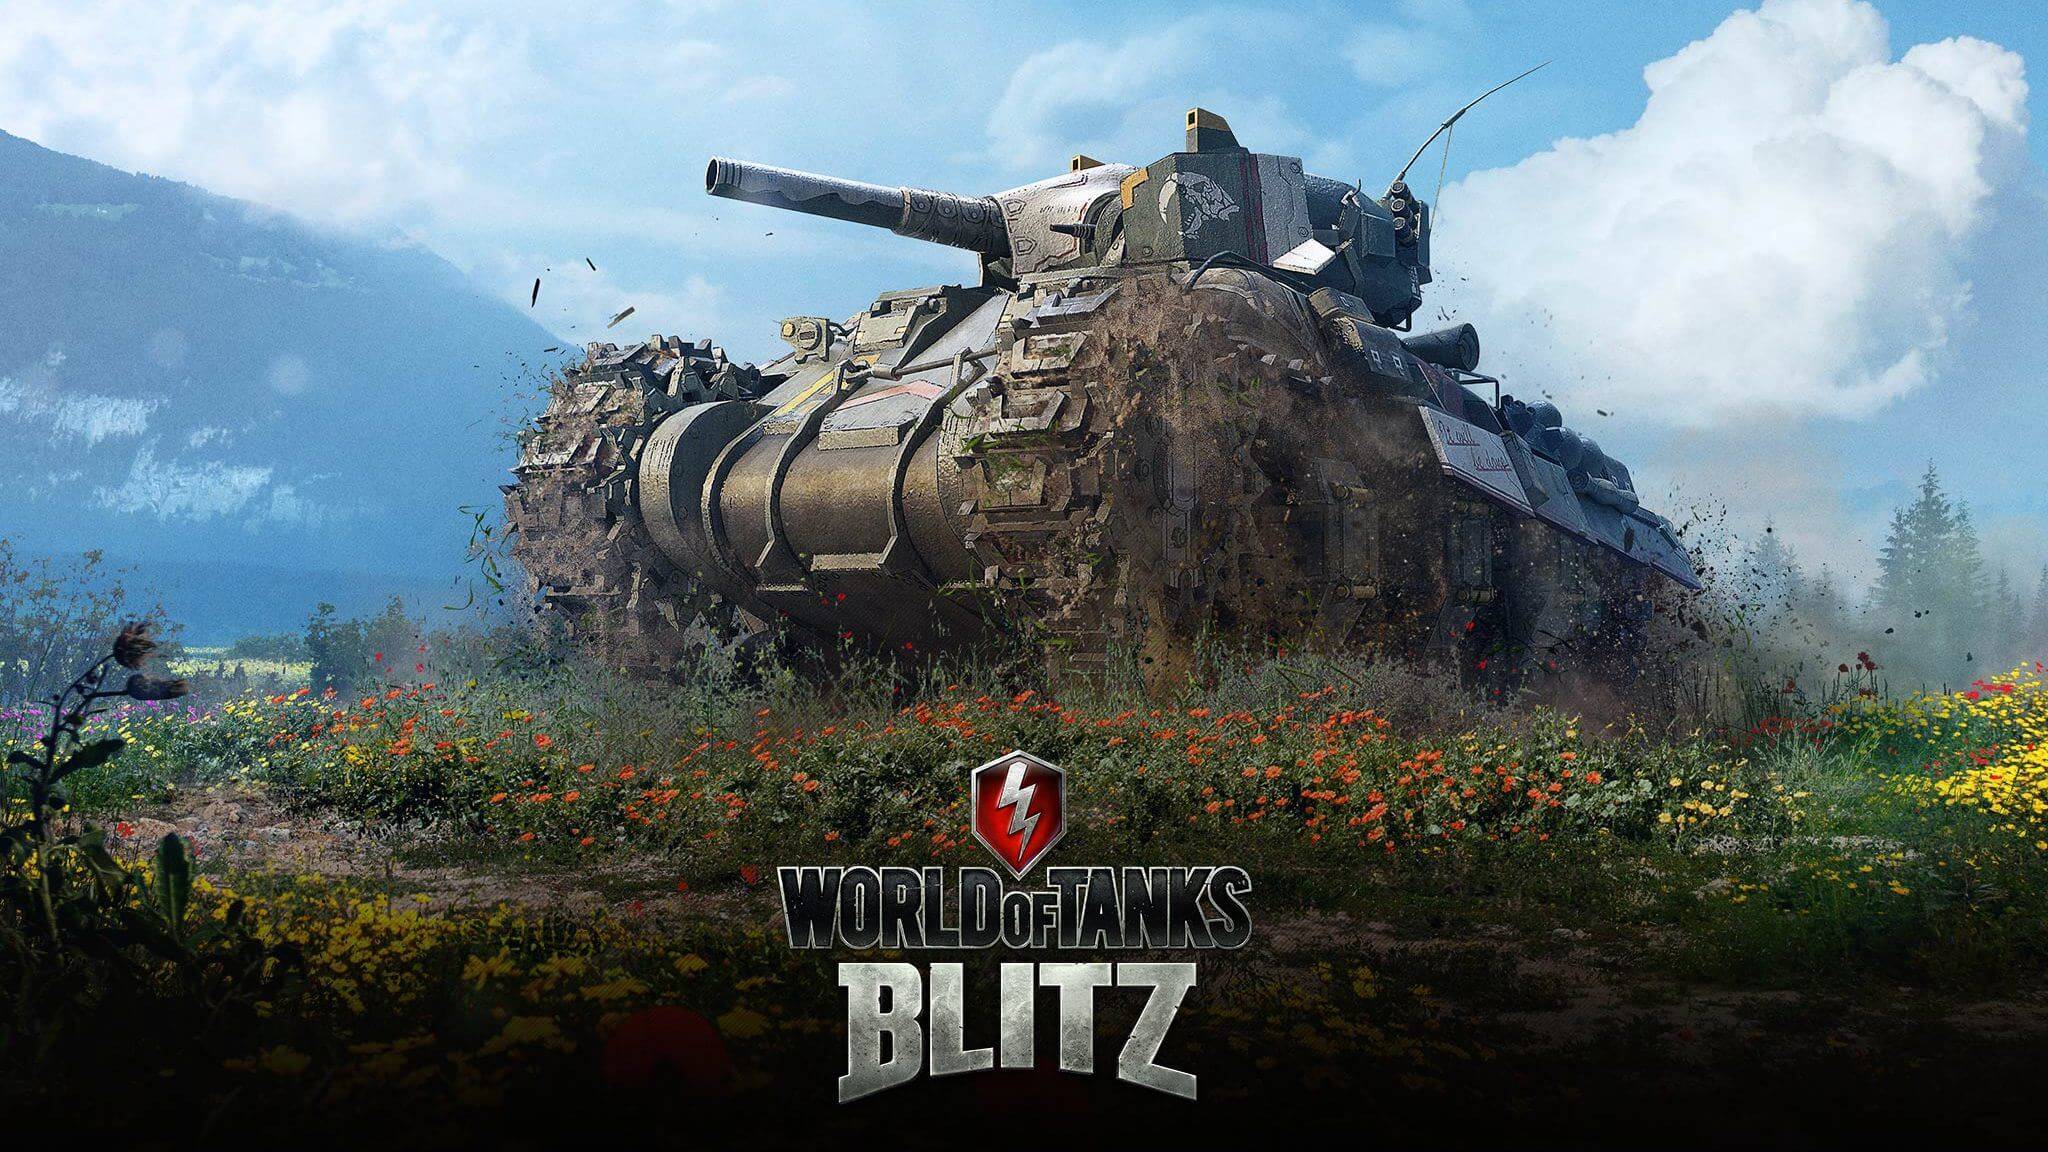 world of tanks blitz bonus codes list 2020